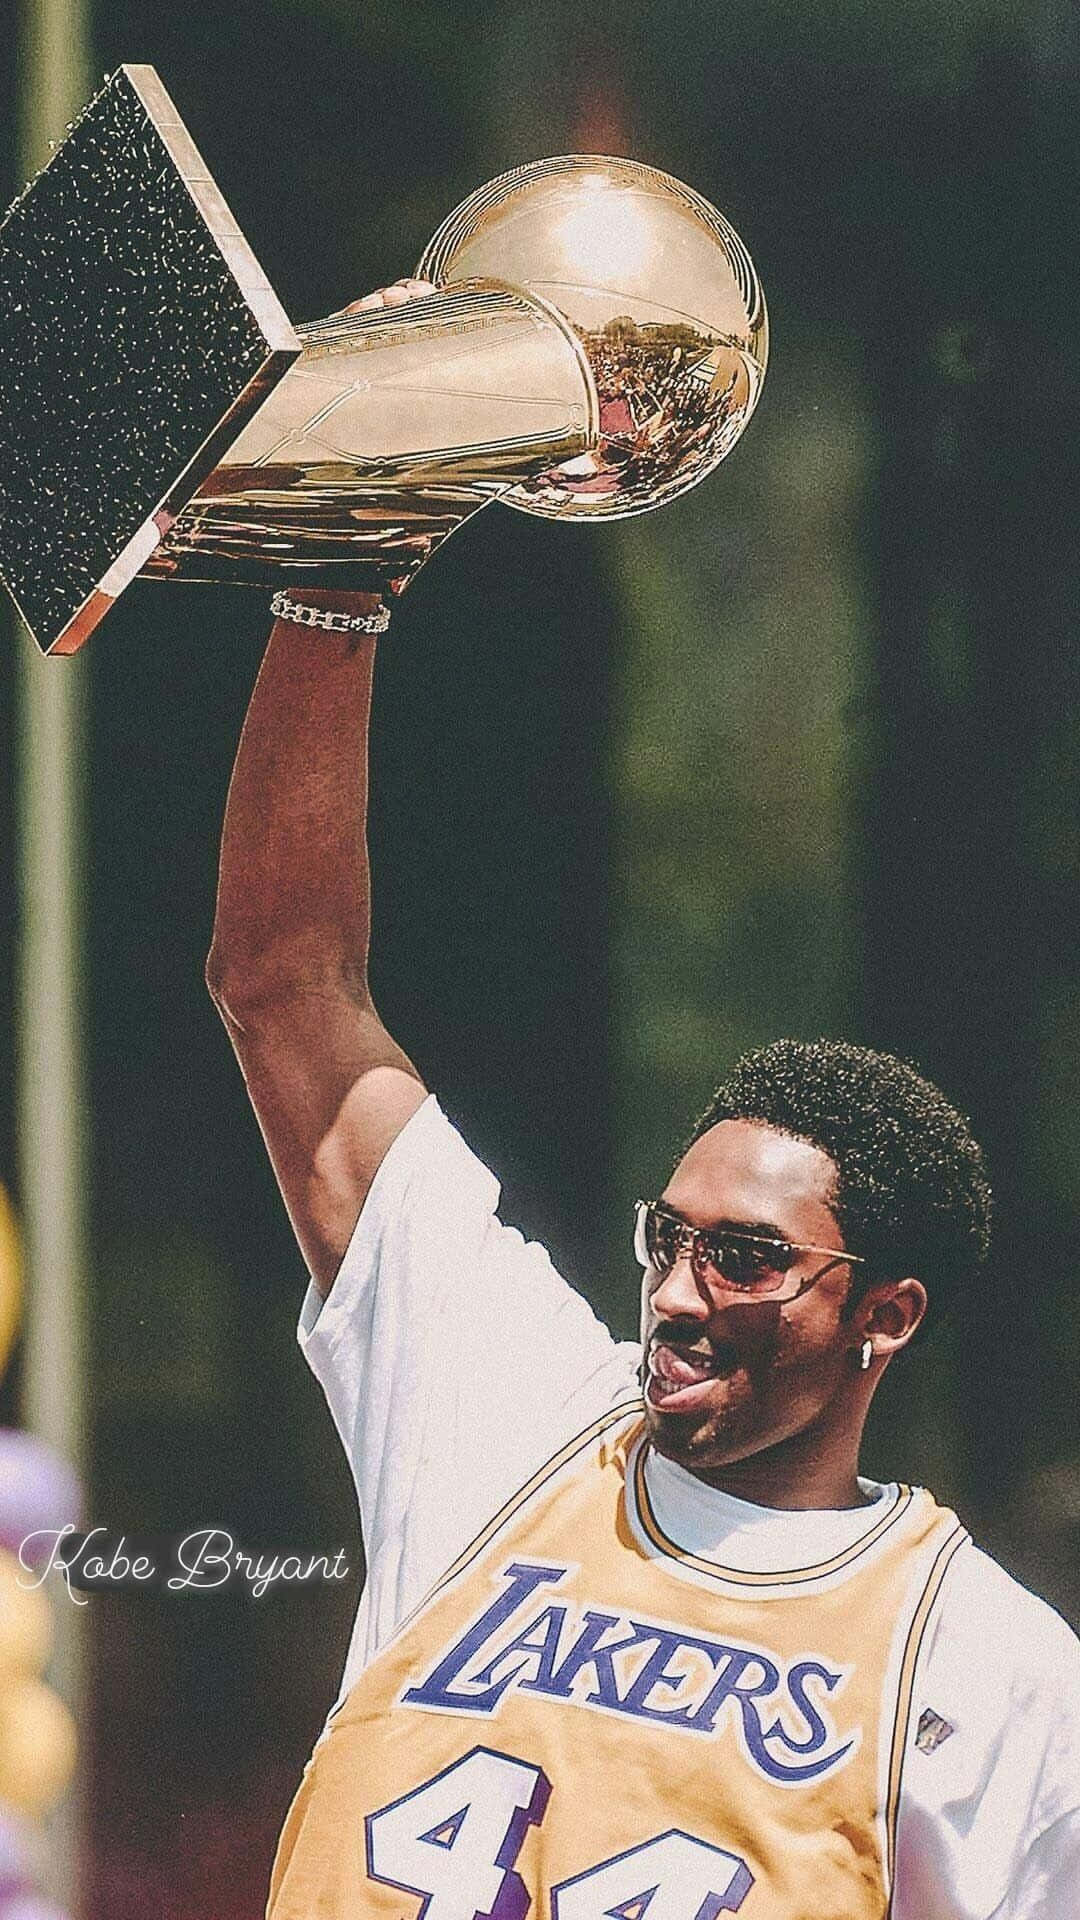 Kobe Bryant holding up the NBA championship trophy - NBA, Kobe Bryant